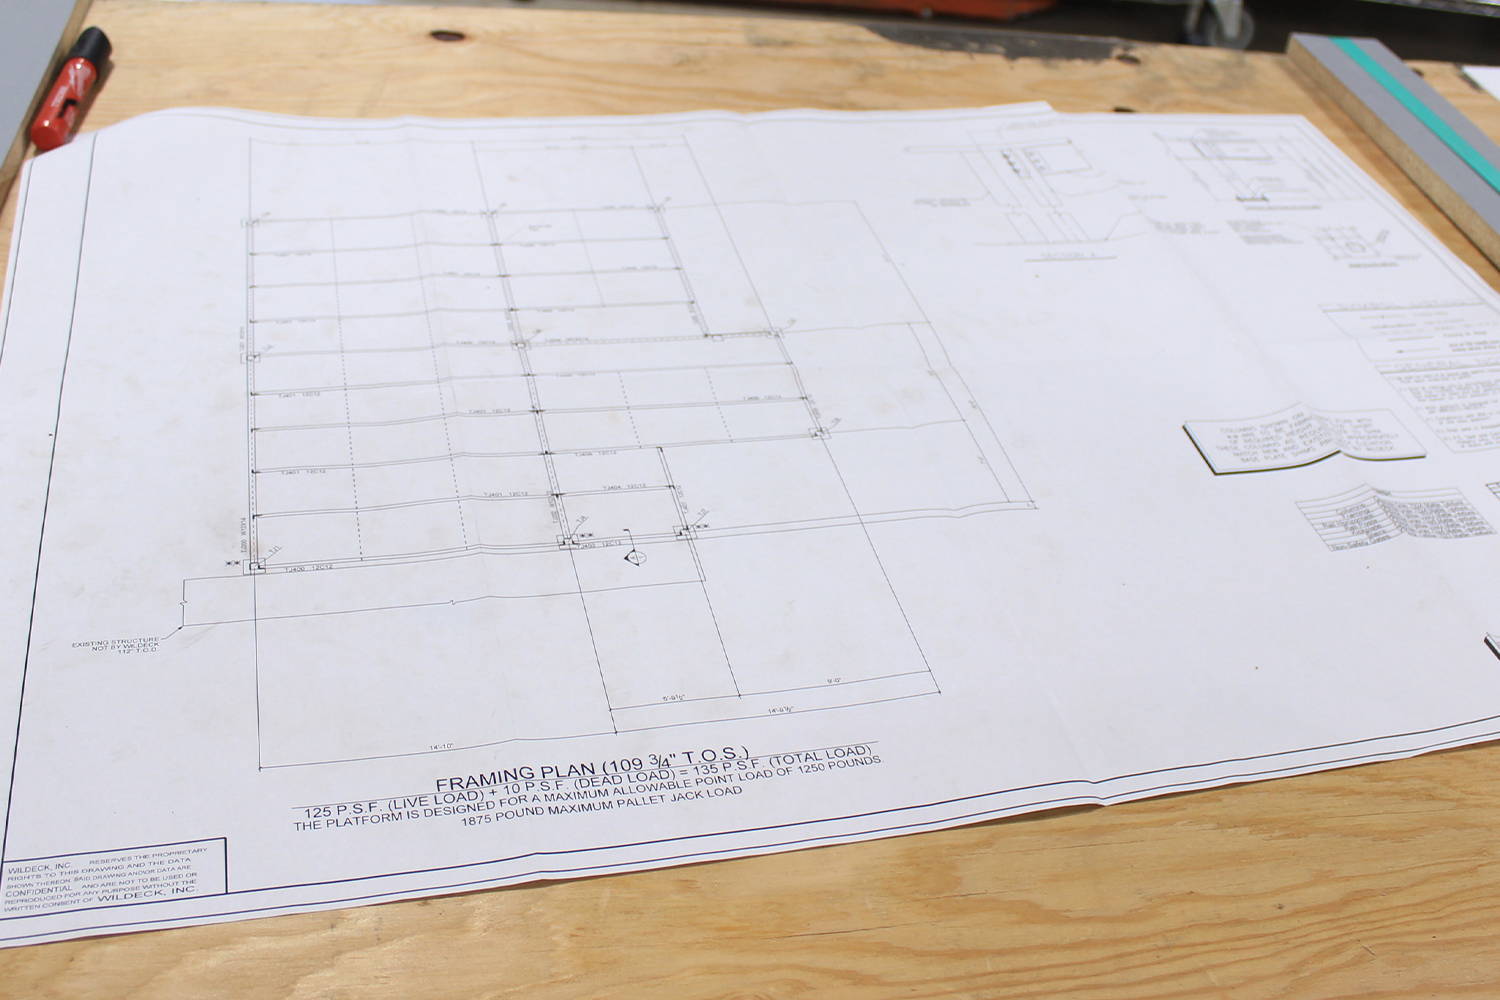 Mezzanine blueprints for College Park Industries mezzanine.